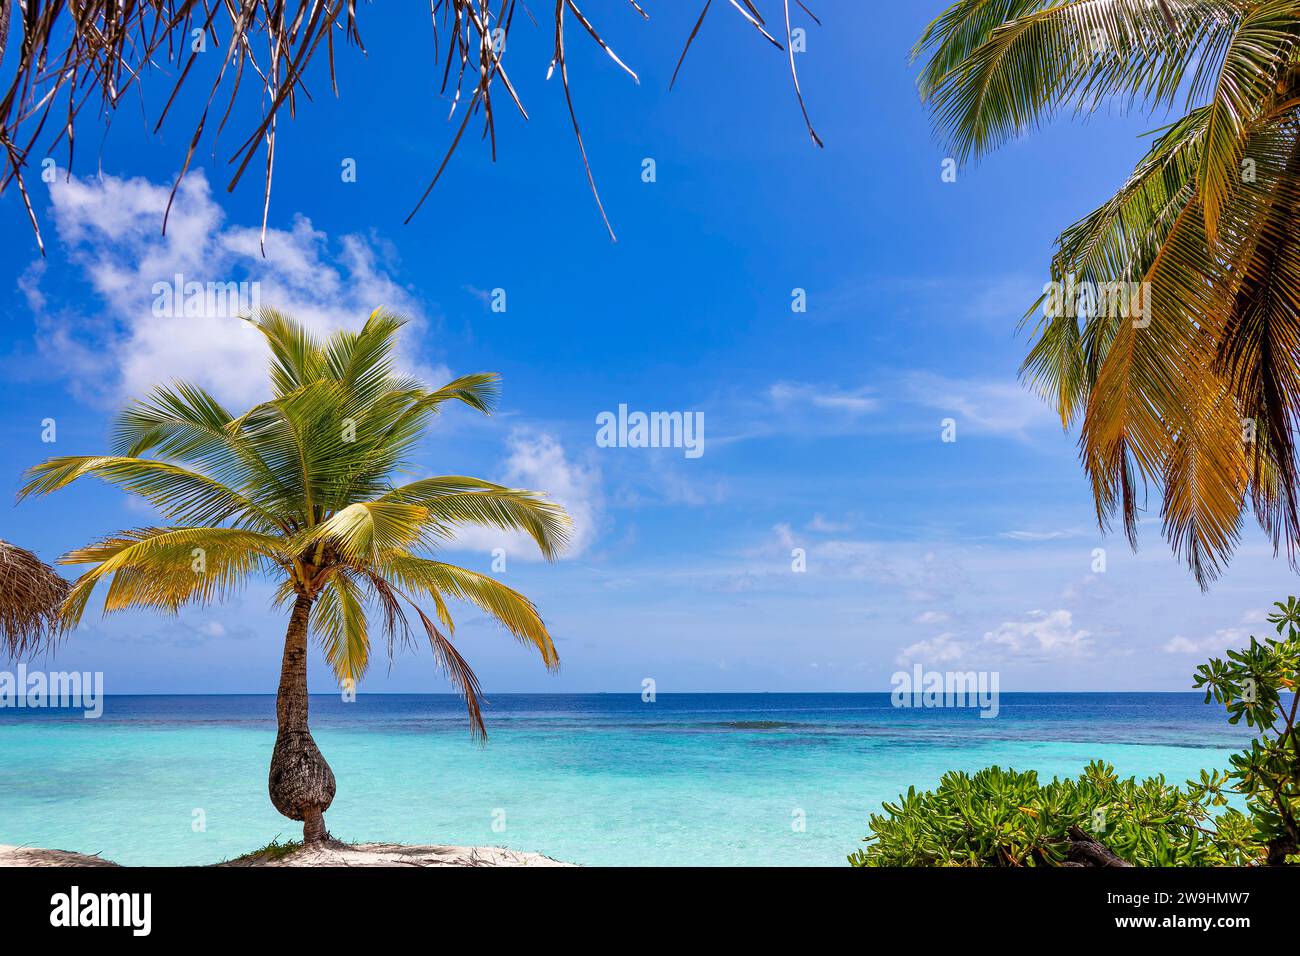 Vegetazione verde tropicale con palme e cespugli sulla spiaggia sabbiosa dell'isola tropicale di fronte all'oceano turchese. Splendido paesaggio blu incorniciato da un cielo Foto Stock